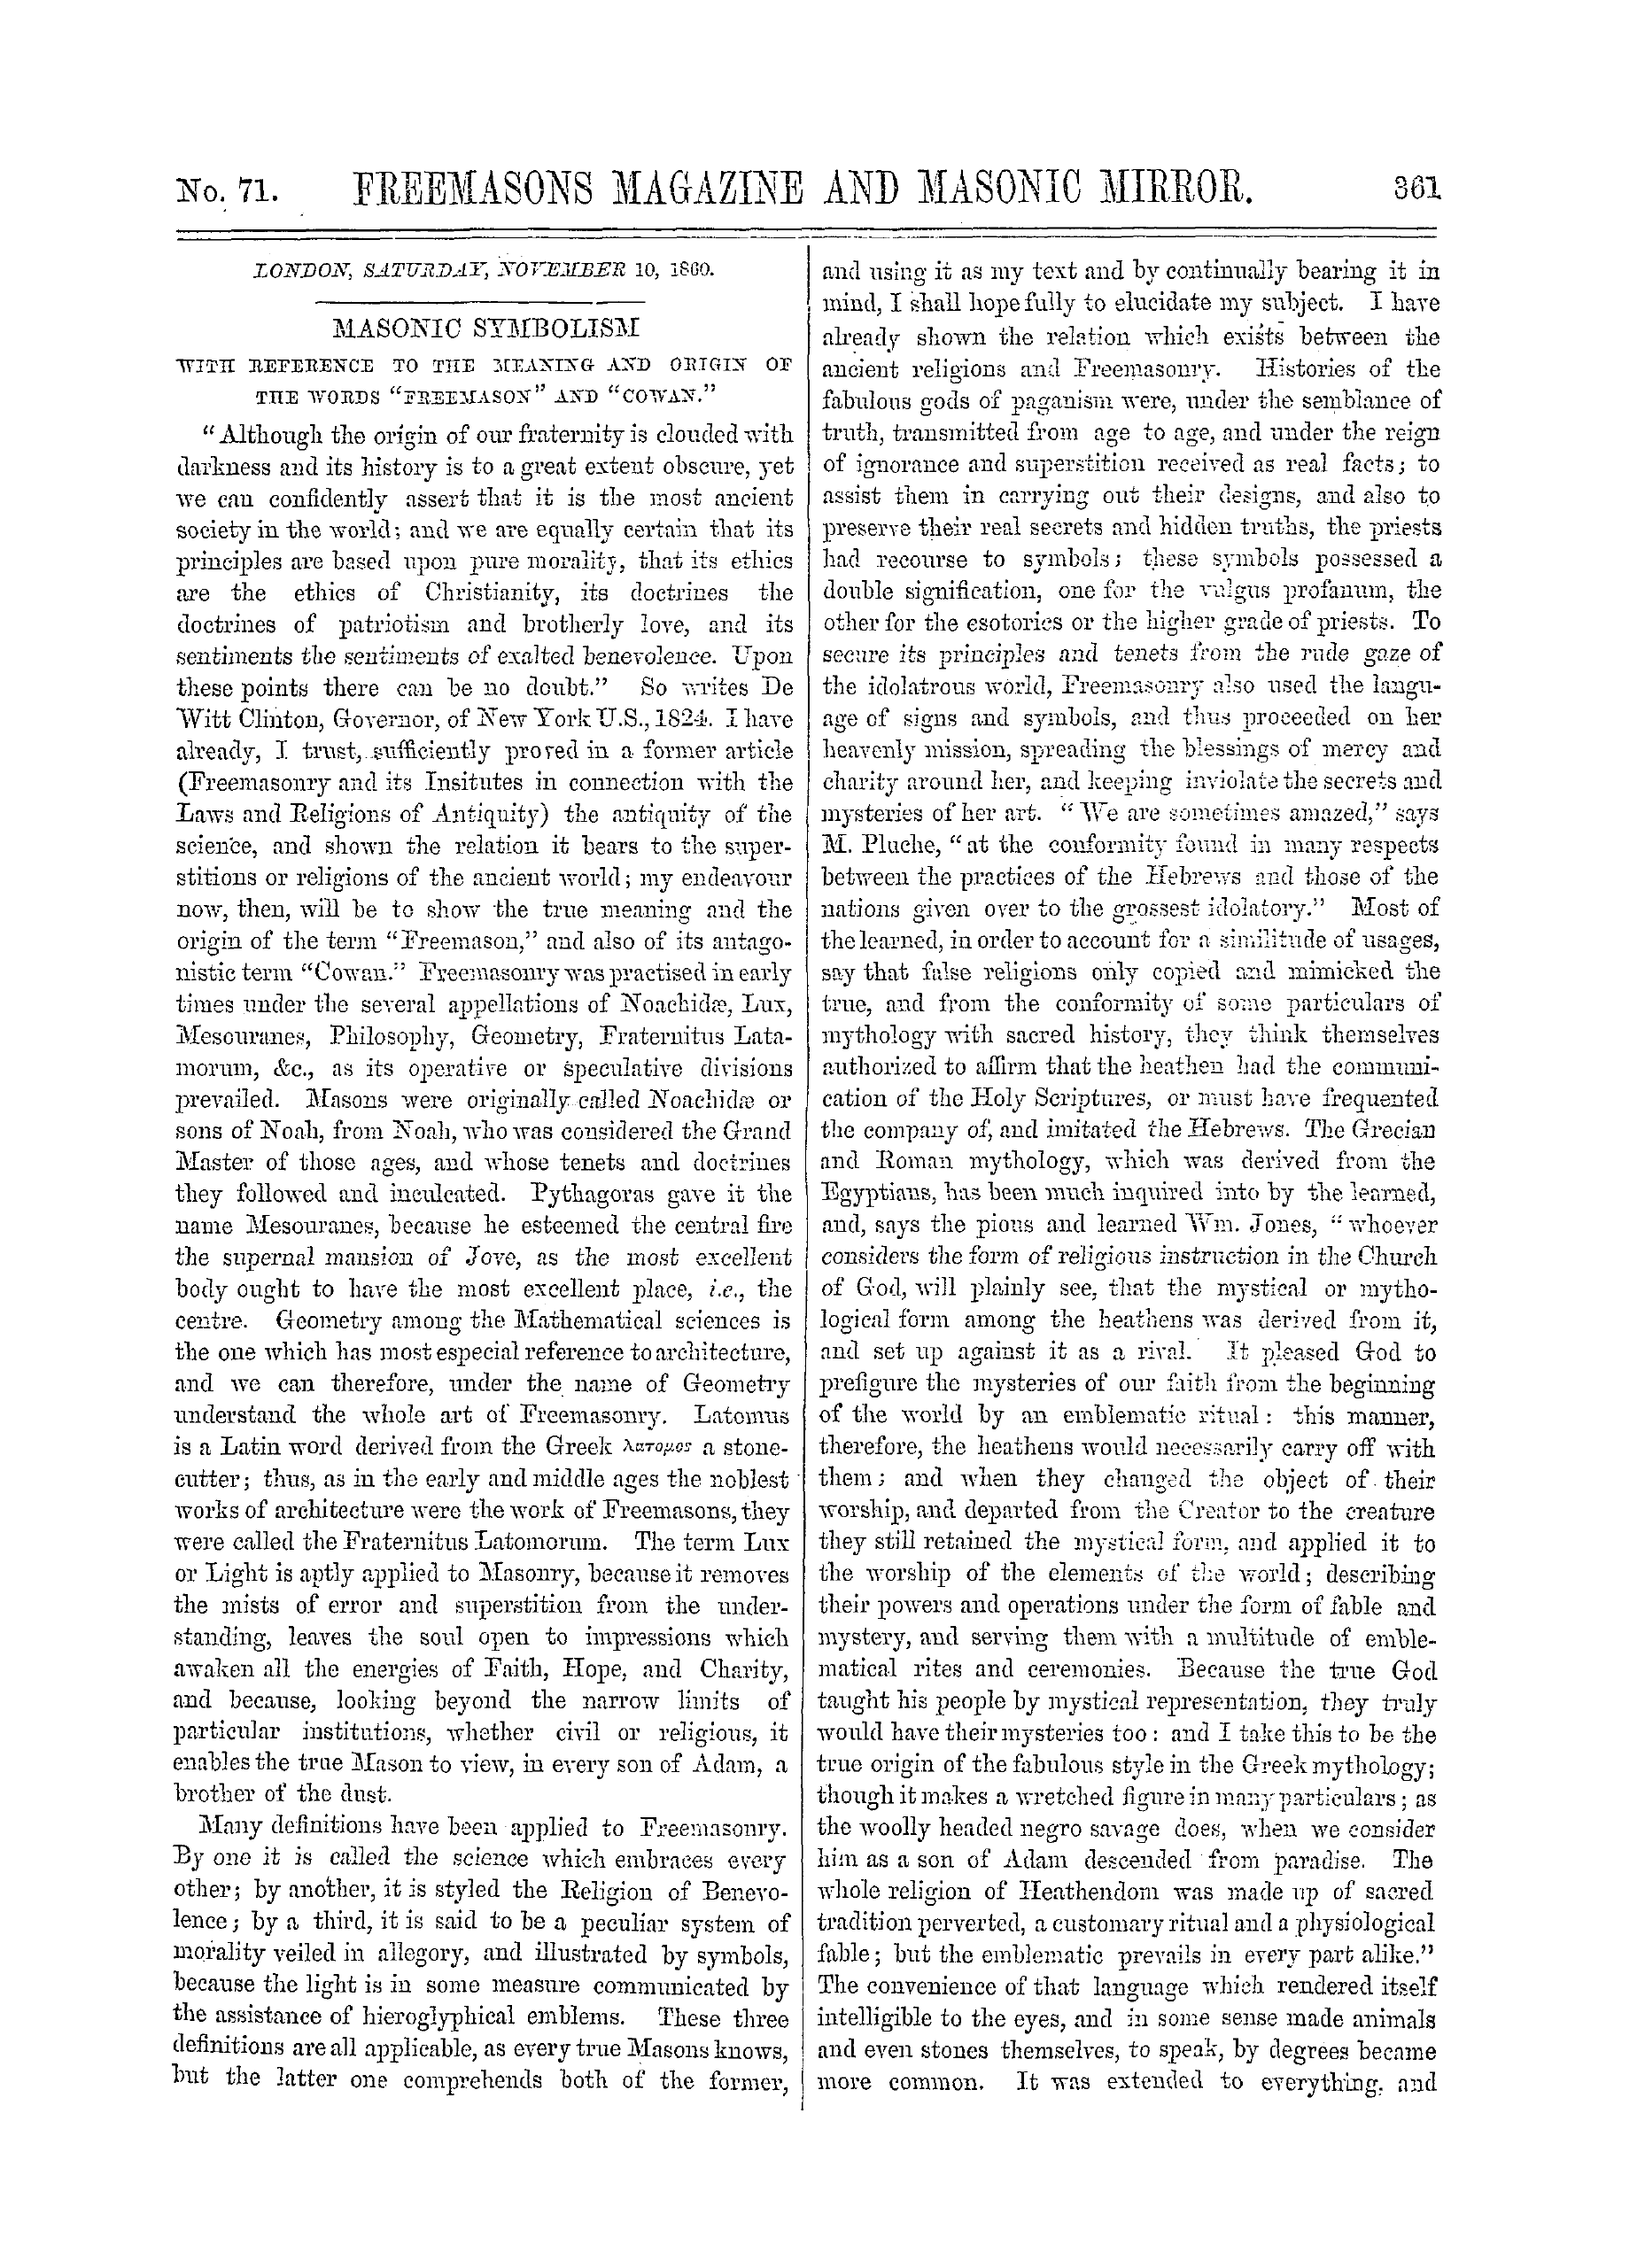 The Freemasons' Monthly Magazine: 1860-11-10: 1